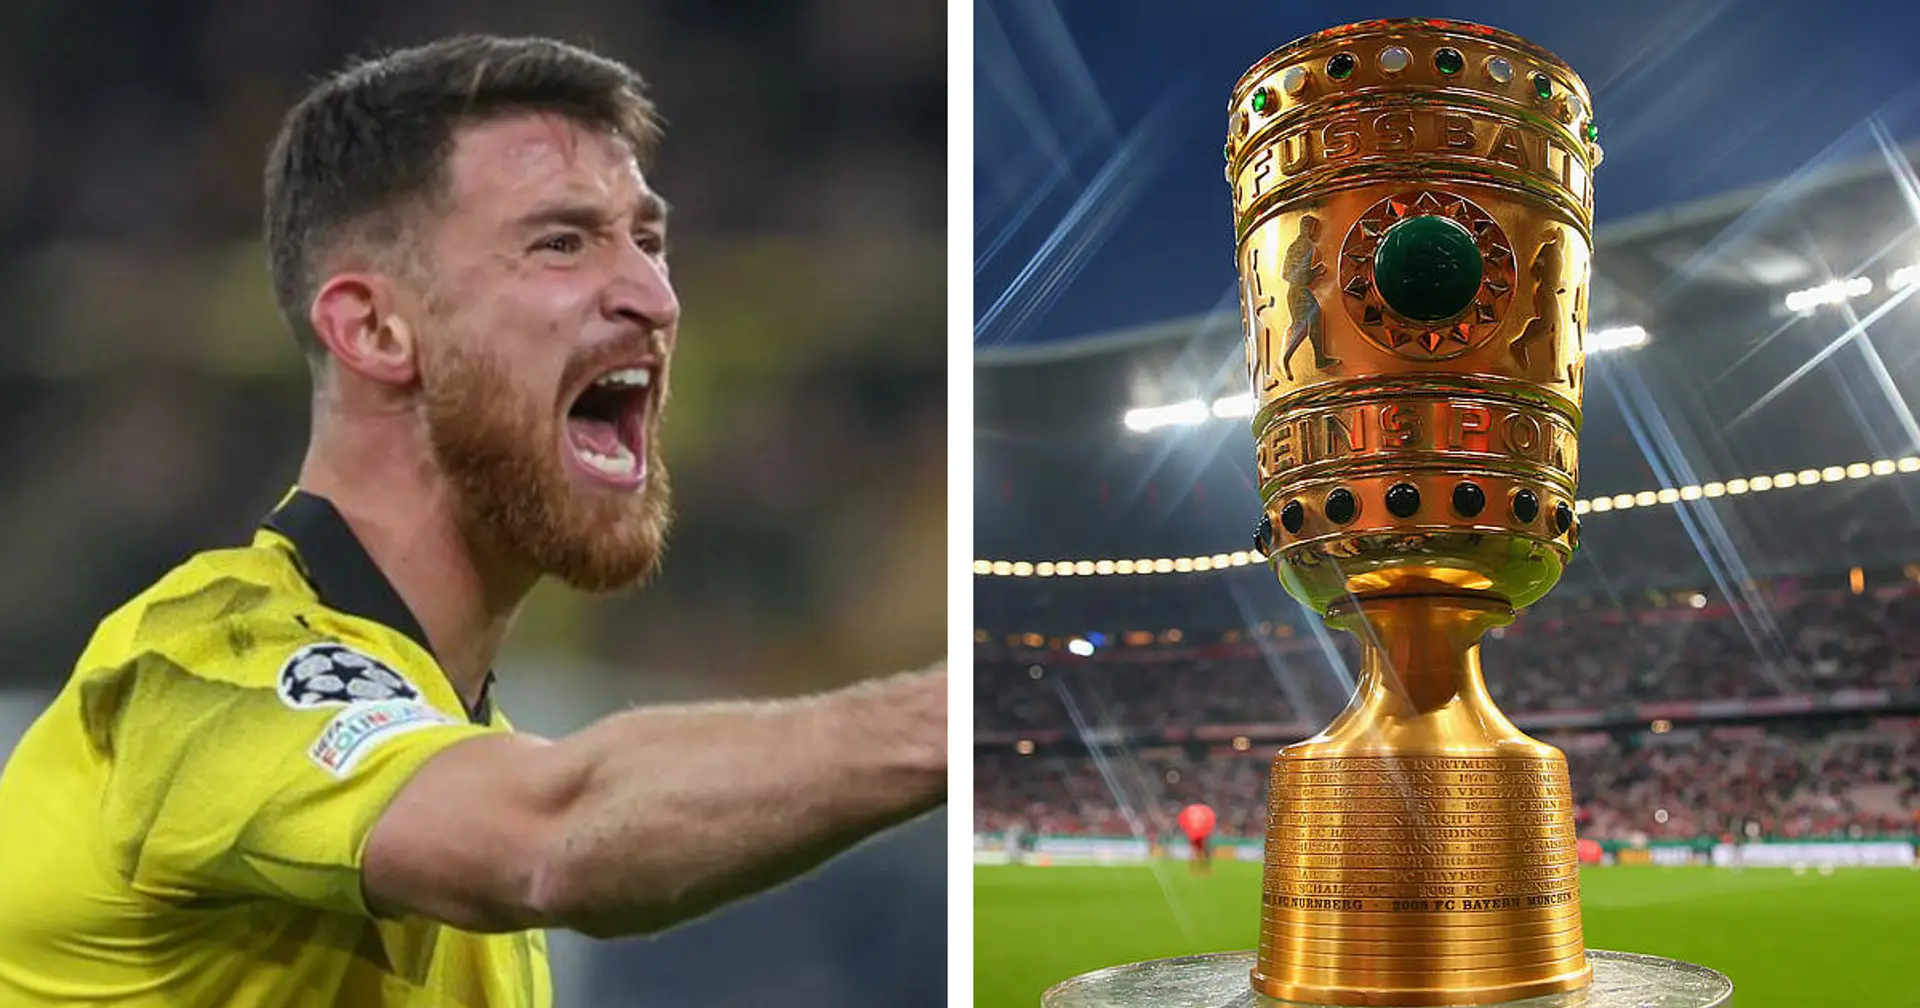 Özcan setzt auf den Erfolg im DFB-Pokal: "Viele Mannschaften wie Bayern und Leipzig schon ausgeschieden"